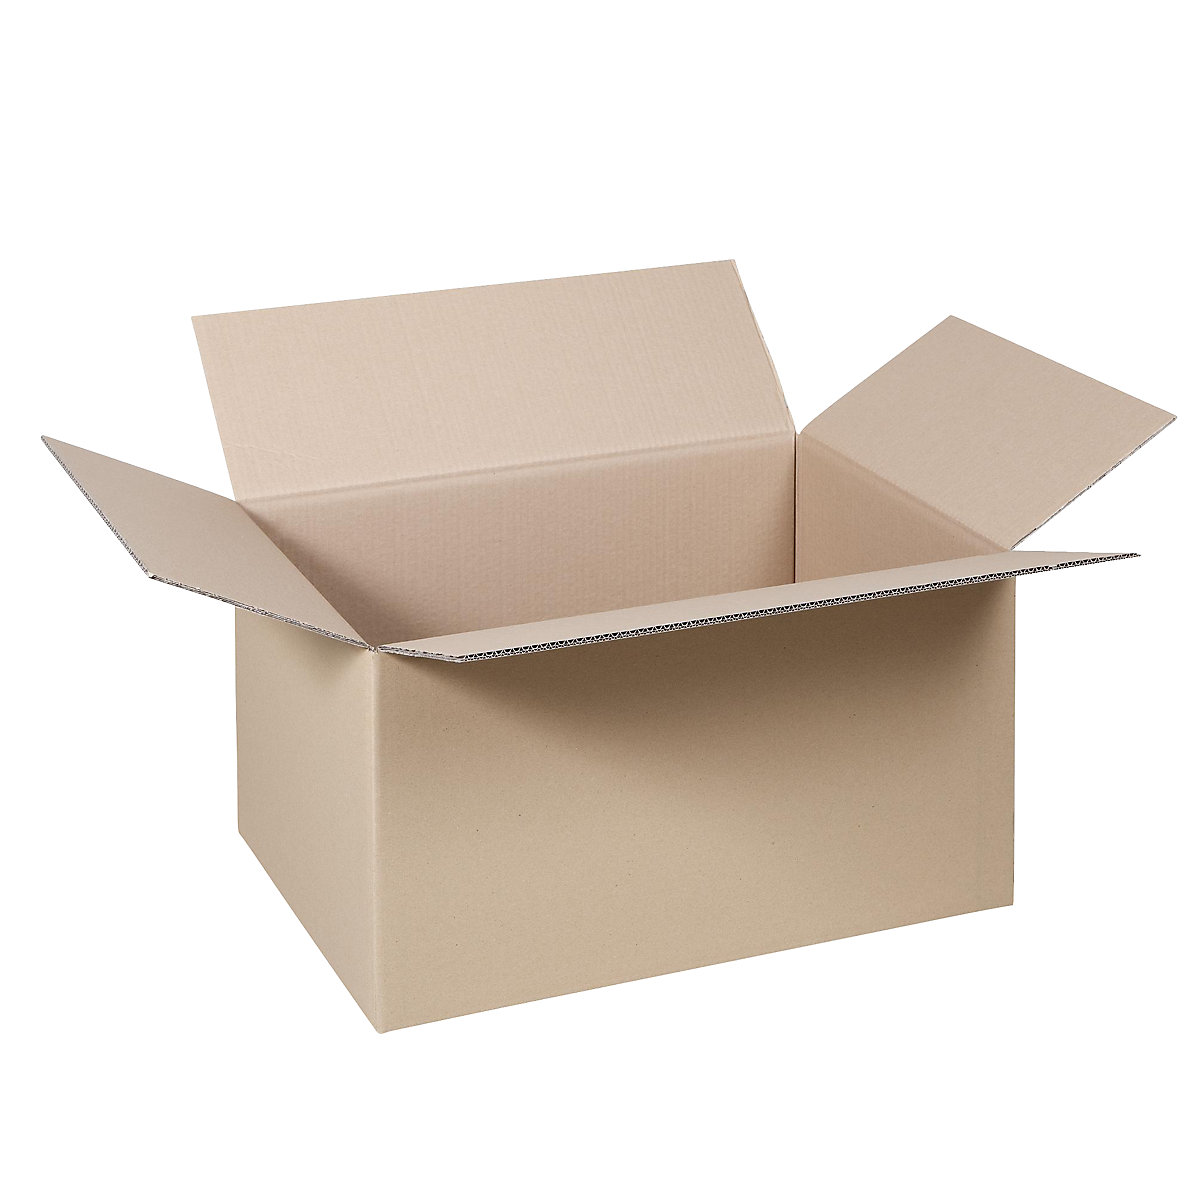 Cutie de carton pliantă, FEFCO 0201, cu 2 straturi de carton ondulat, dimensiuni interioare 500 x 400 x 400 mm, amb. 100 buc.-41